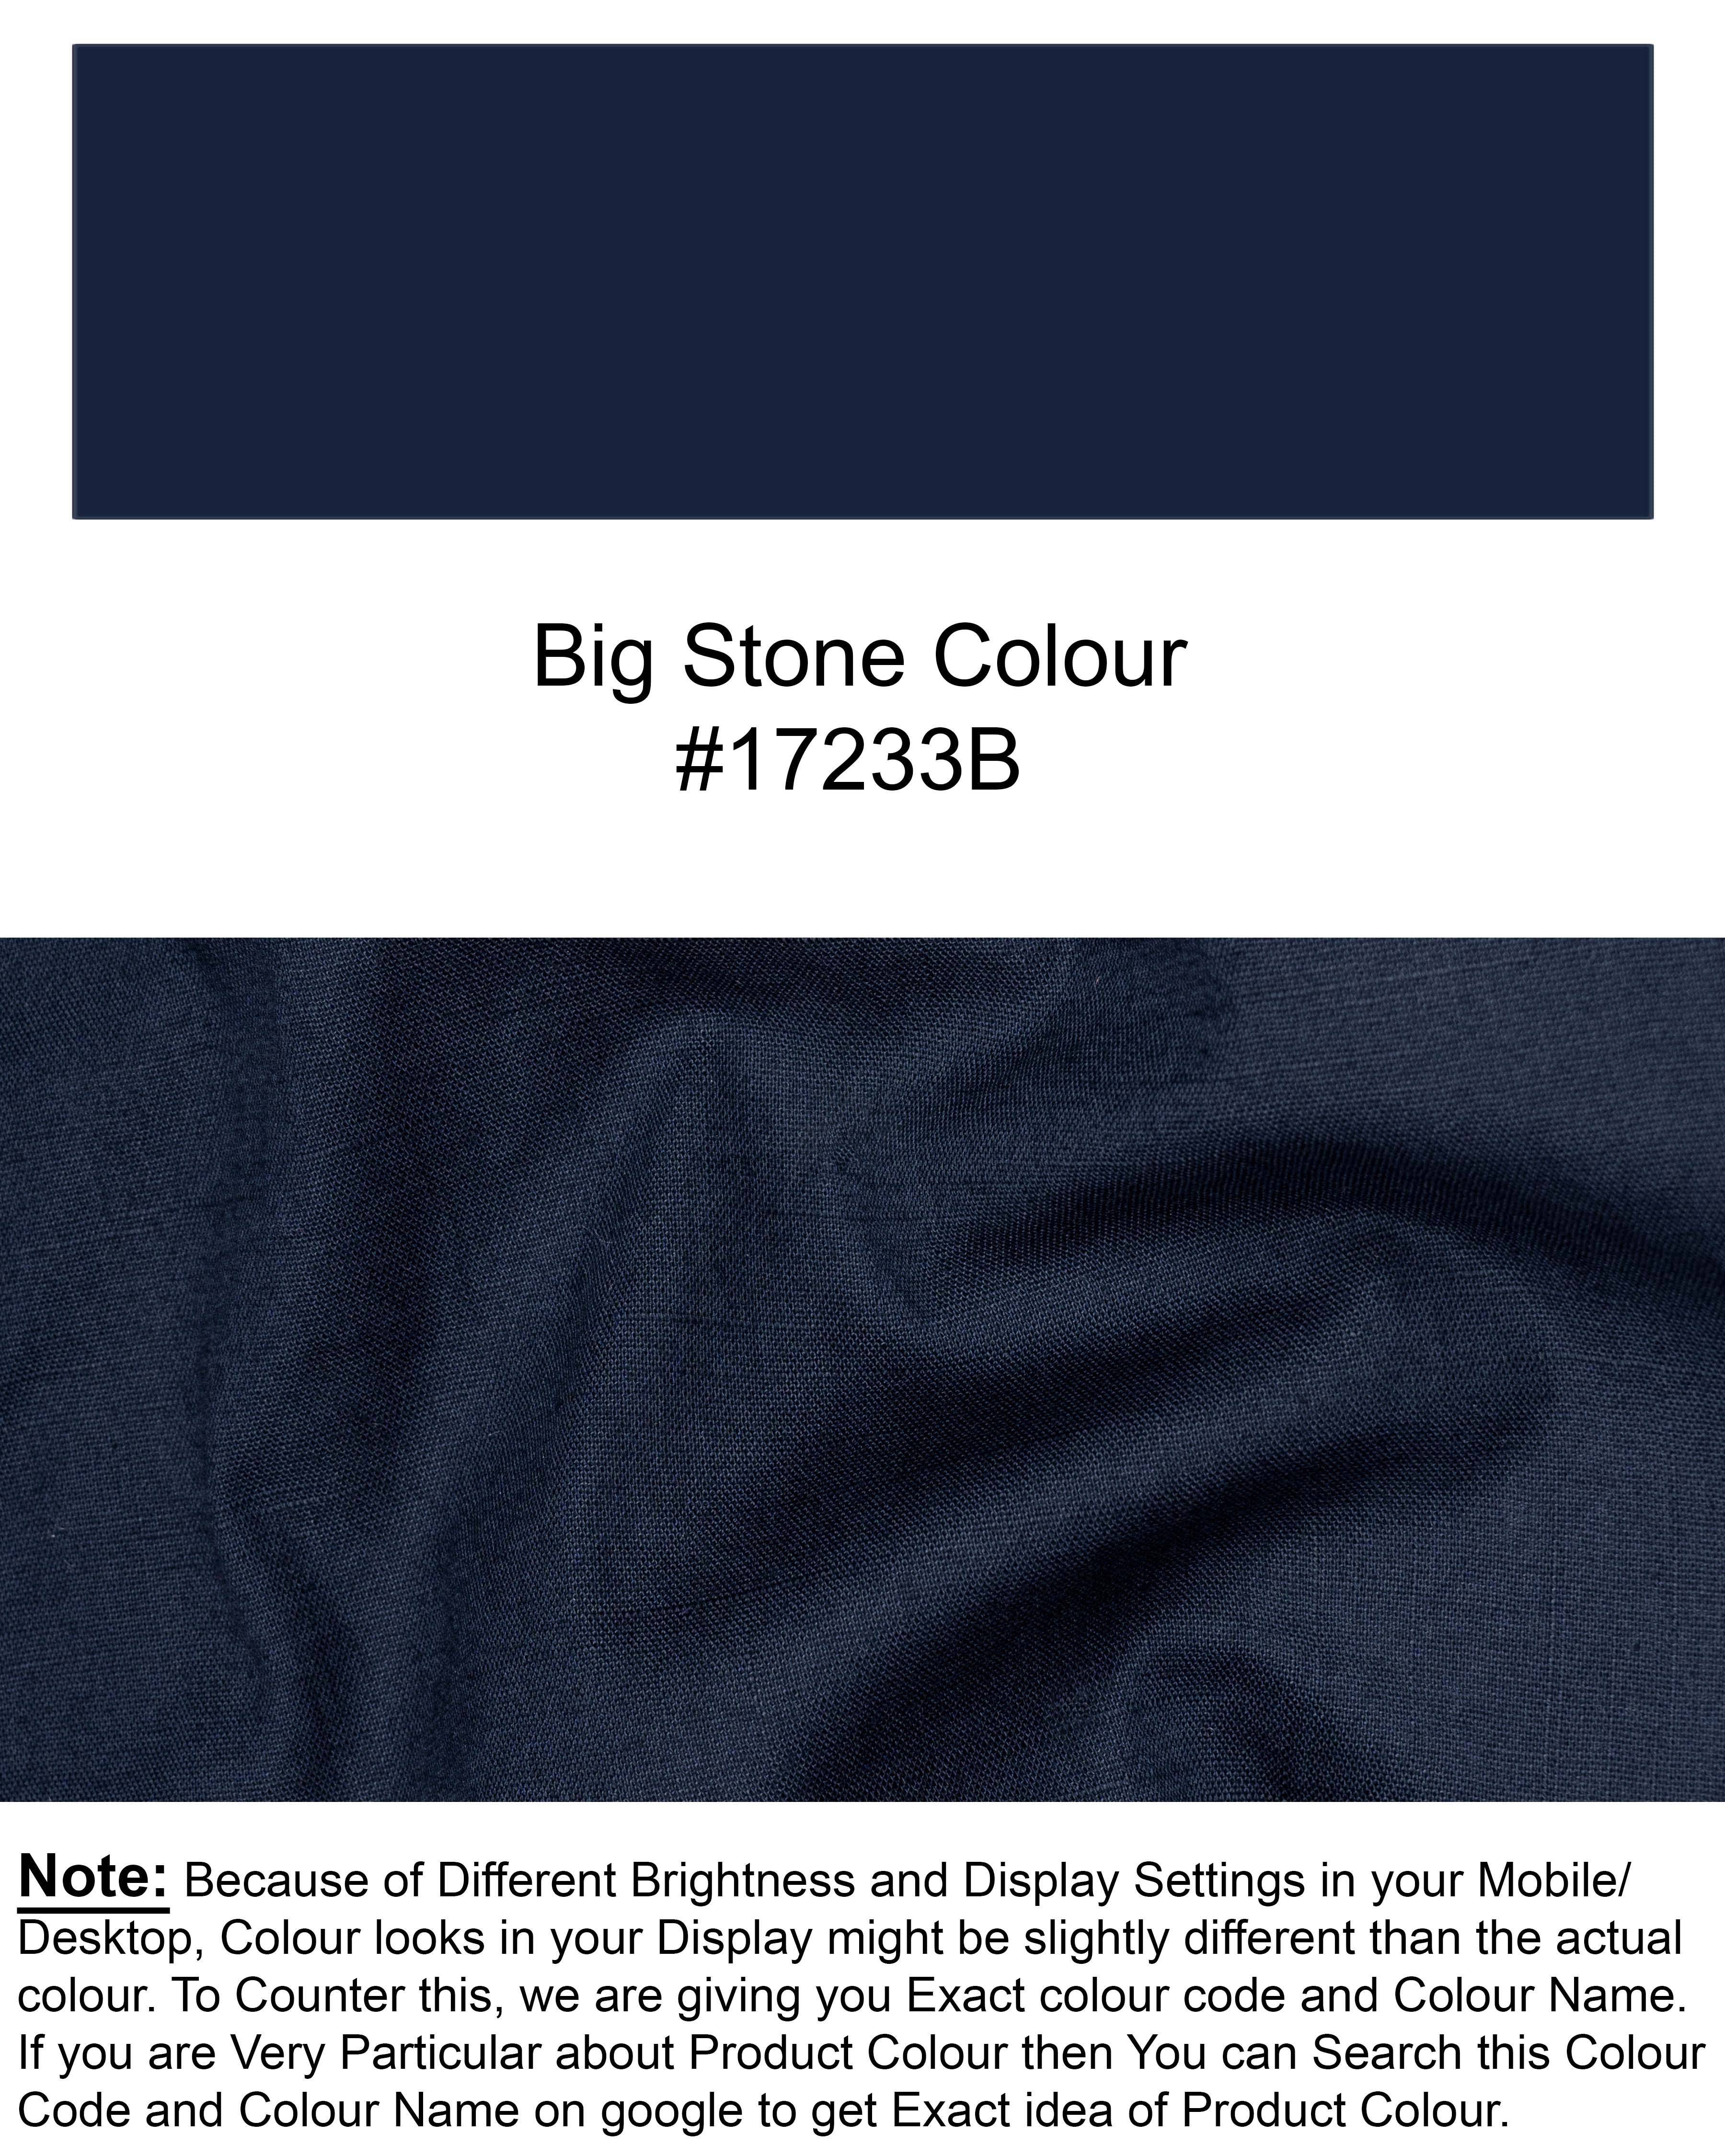 Big Stone Blue Luxurious Linen Shirt 6172-BD-BLE-38, 6172-BD-BLE-H-38, 6172-BD-BLE-39, 6172-BD-BLE-H-39, 6172-BD-BLE-40, 6172-BD-BLE-H-40, 6172-BD-BLE-42, 6172-BD-BLE-H-42, 6172-BD-BLE-44, 6172-BD-BLE-H-44, 6172-BD-BLE-46, 6172-BD-BLE-H-46, 6172-BD-BLE-48, 6172-BD-BLE-H-48, 6172-BD-BLE-50, 6172-BD-BLE-H-50, 6172-BD-BLE-52, 6172-BD-BLE-H-52